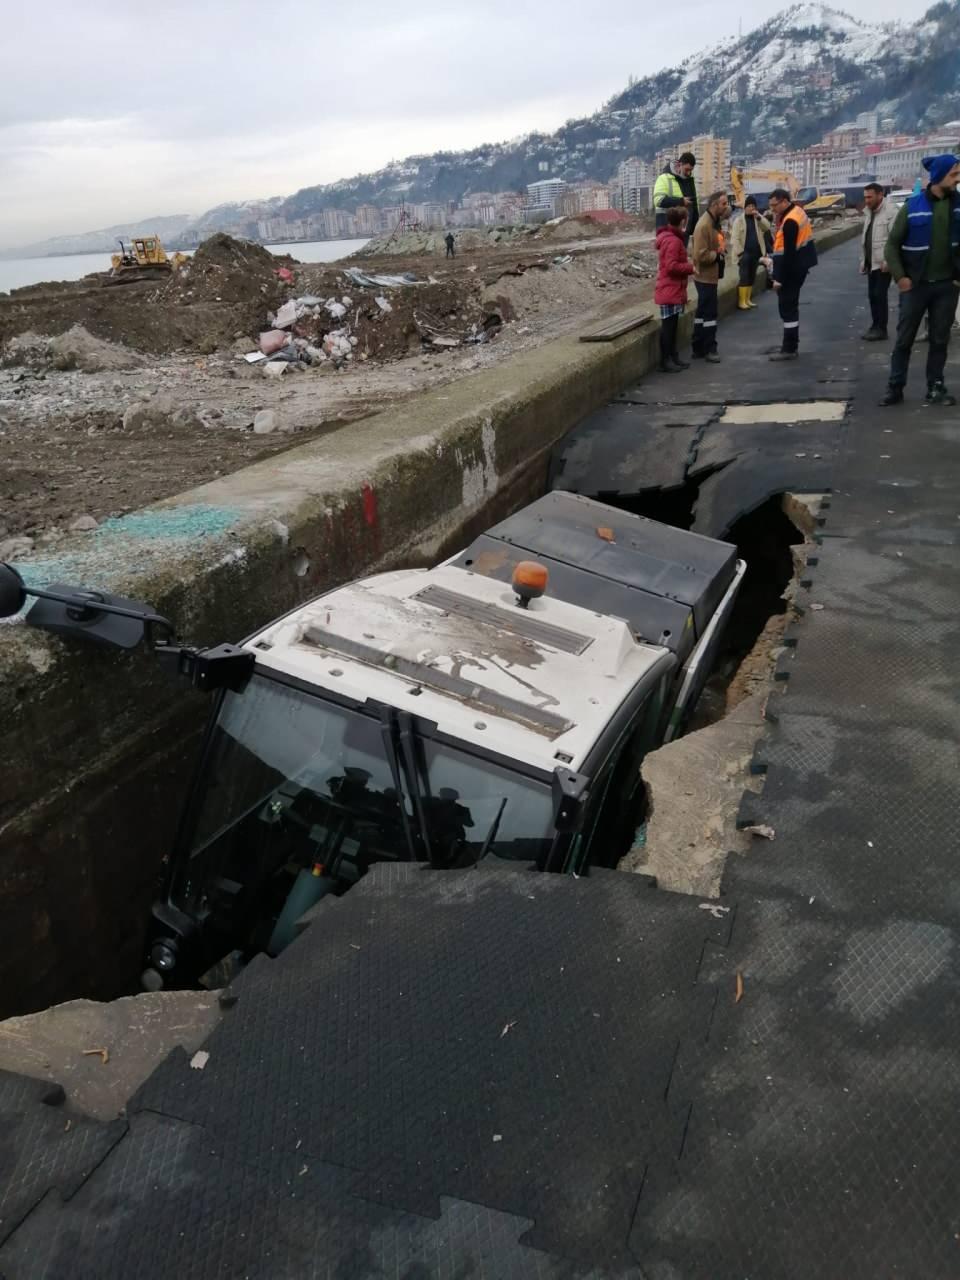 <p>Rize’de sahildeki yürüyüş bandında göçük oluştu,  üzerindeki belediyeye ait süpürme aracı çukura düştü. Sürücü, camı kırılan araçtan çıkmayı başardı. </p>

<p> </p>
